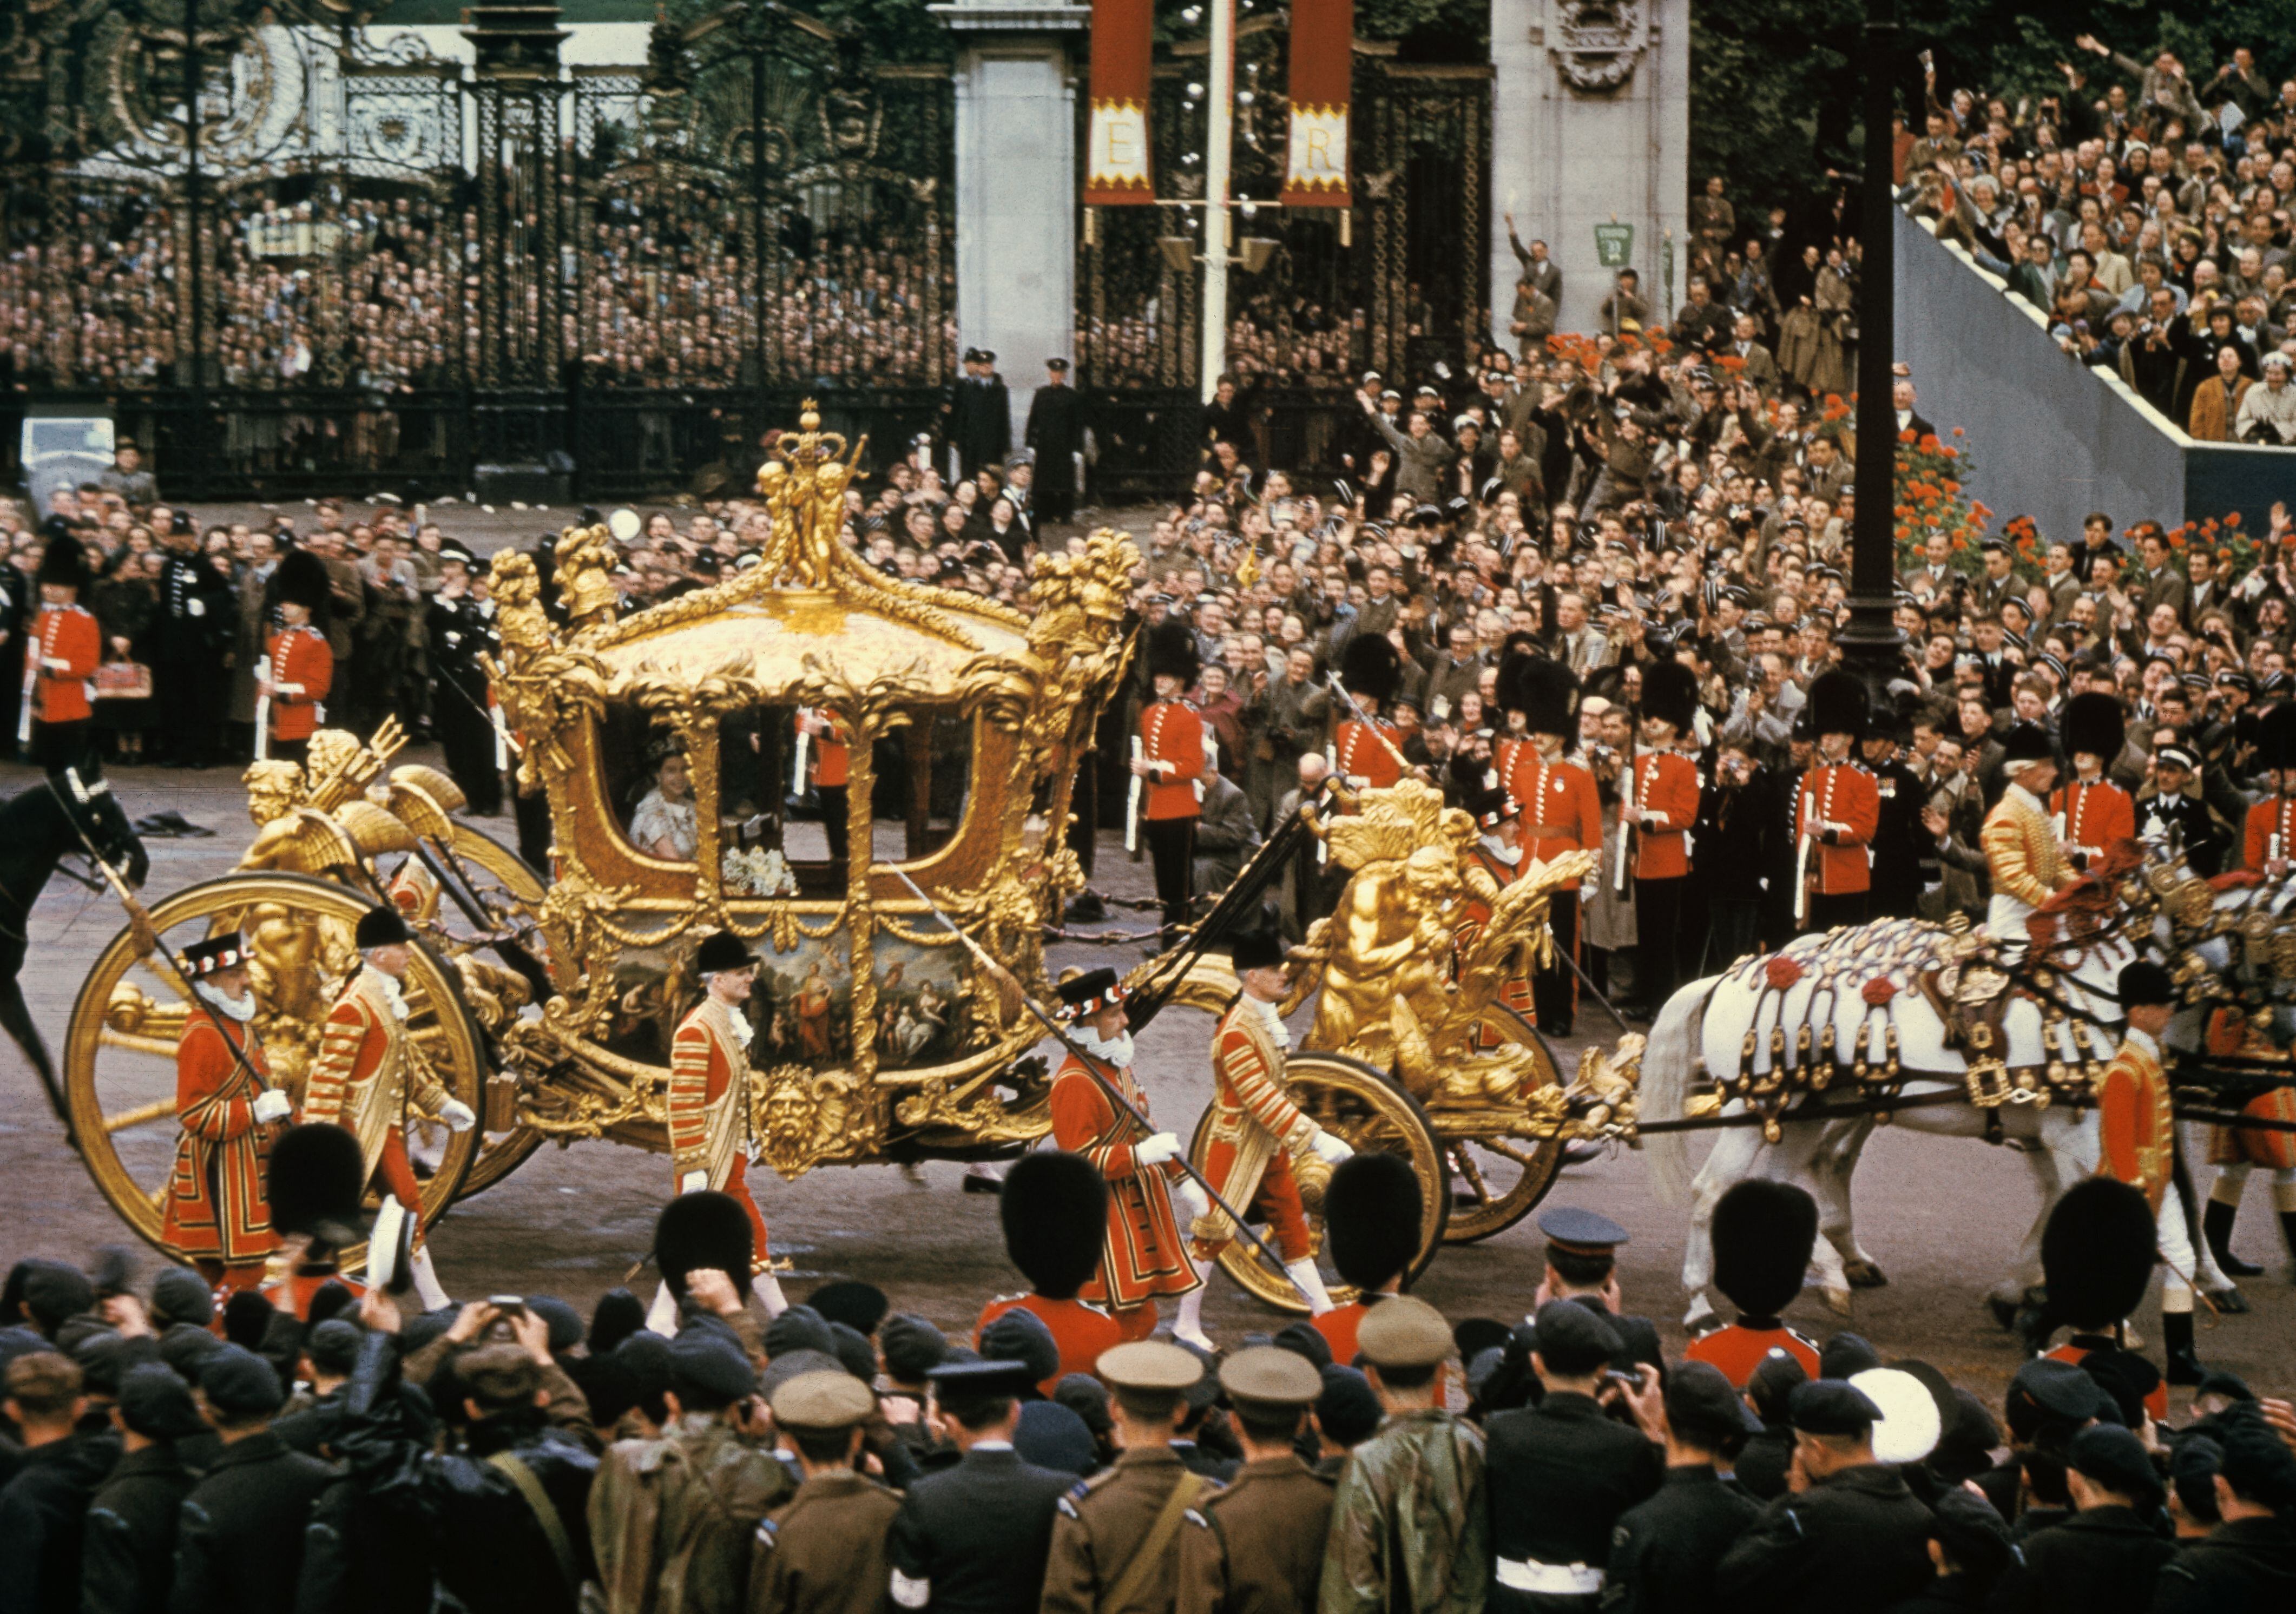 El carruaje de oro real, de cuatro toneladas, fue la pieza central de la coronación. Un carruaje que es un símbolo de la riqueza y gloria pasadas del antiguo imperio británico, y que Isabel II utilizó por última vez el pasado verano durante el Jubileo de Platino.